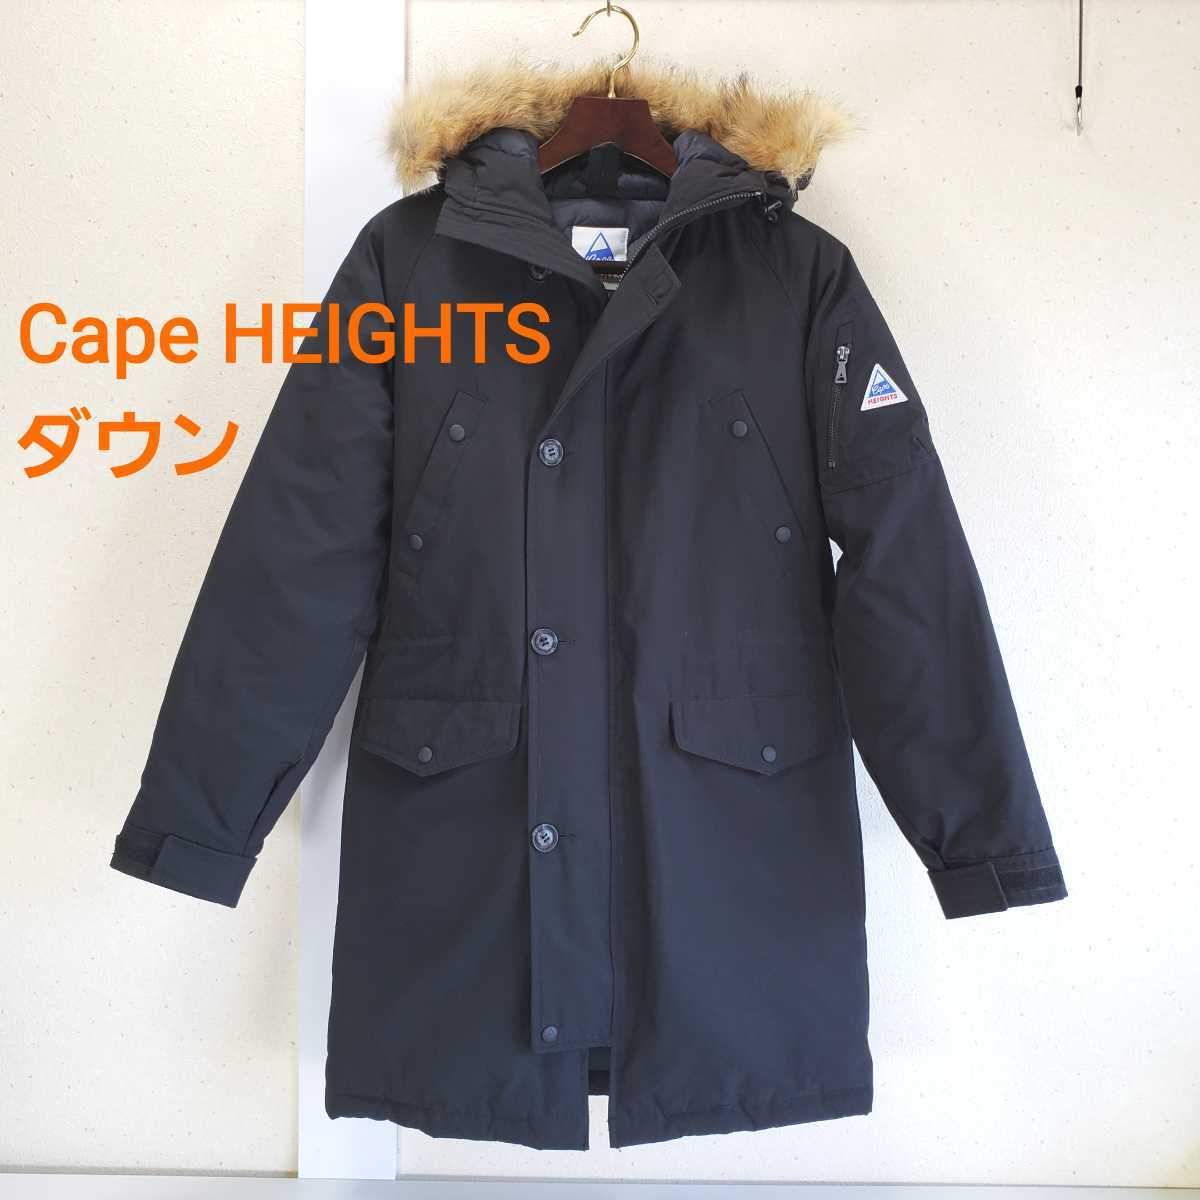 美品◆Cape HEIGHTS ケープハイツ 80/20 リアルファー付き N-3B ミリタリー ダウンコート(メンズS)ブラック 黒